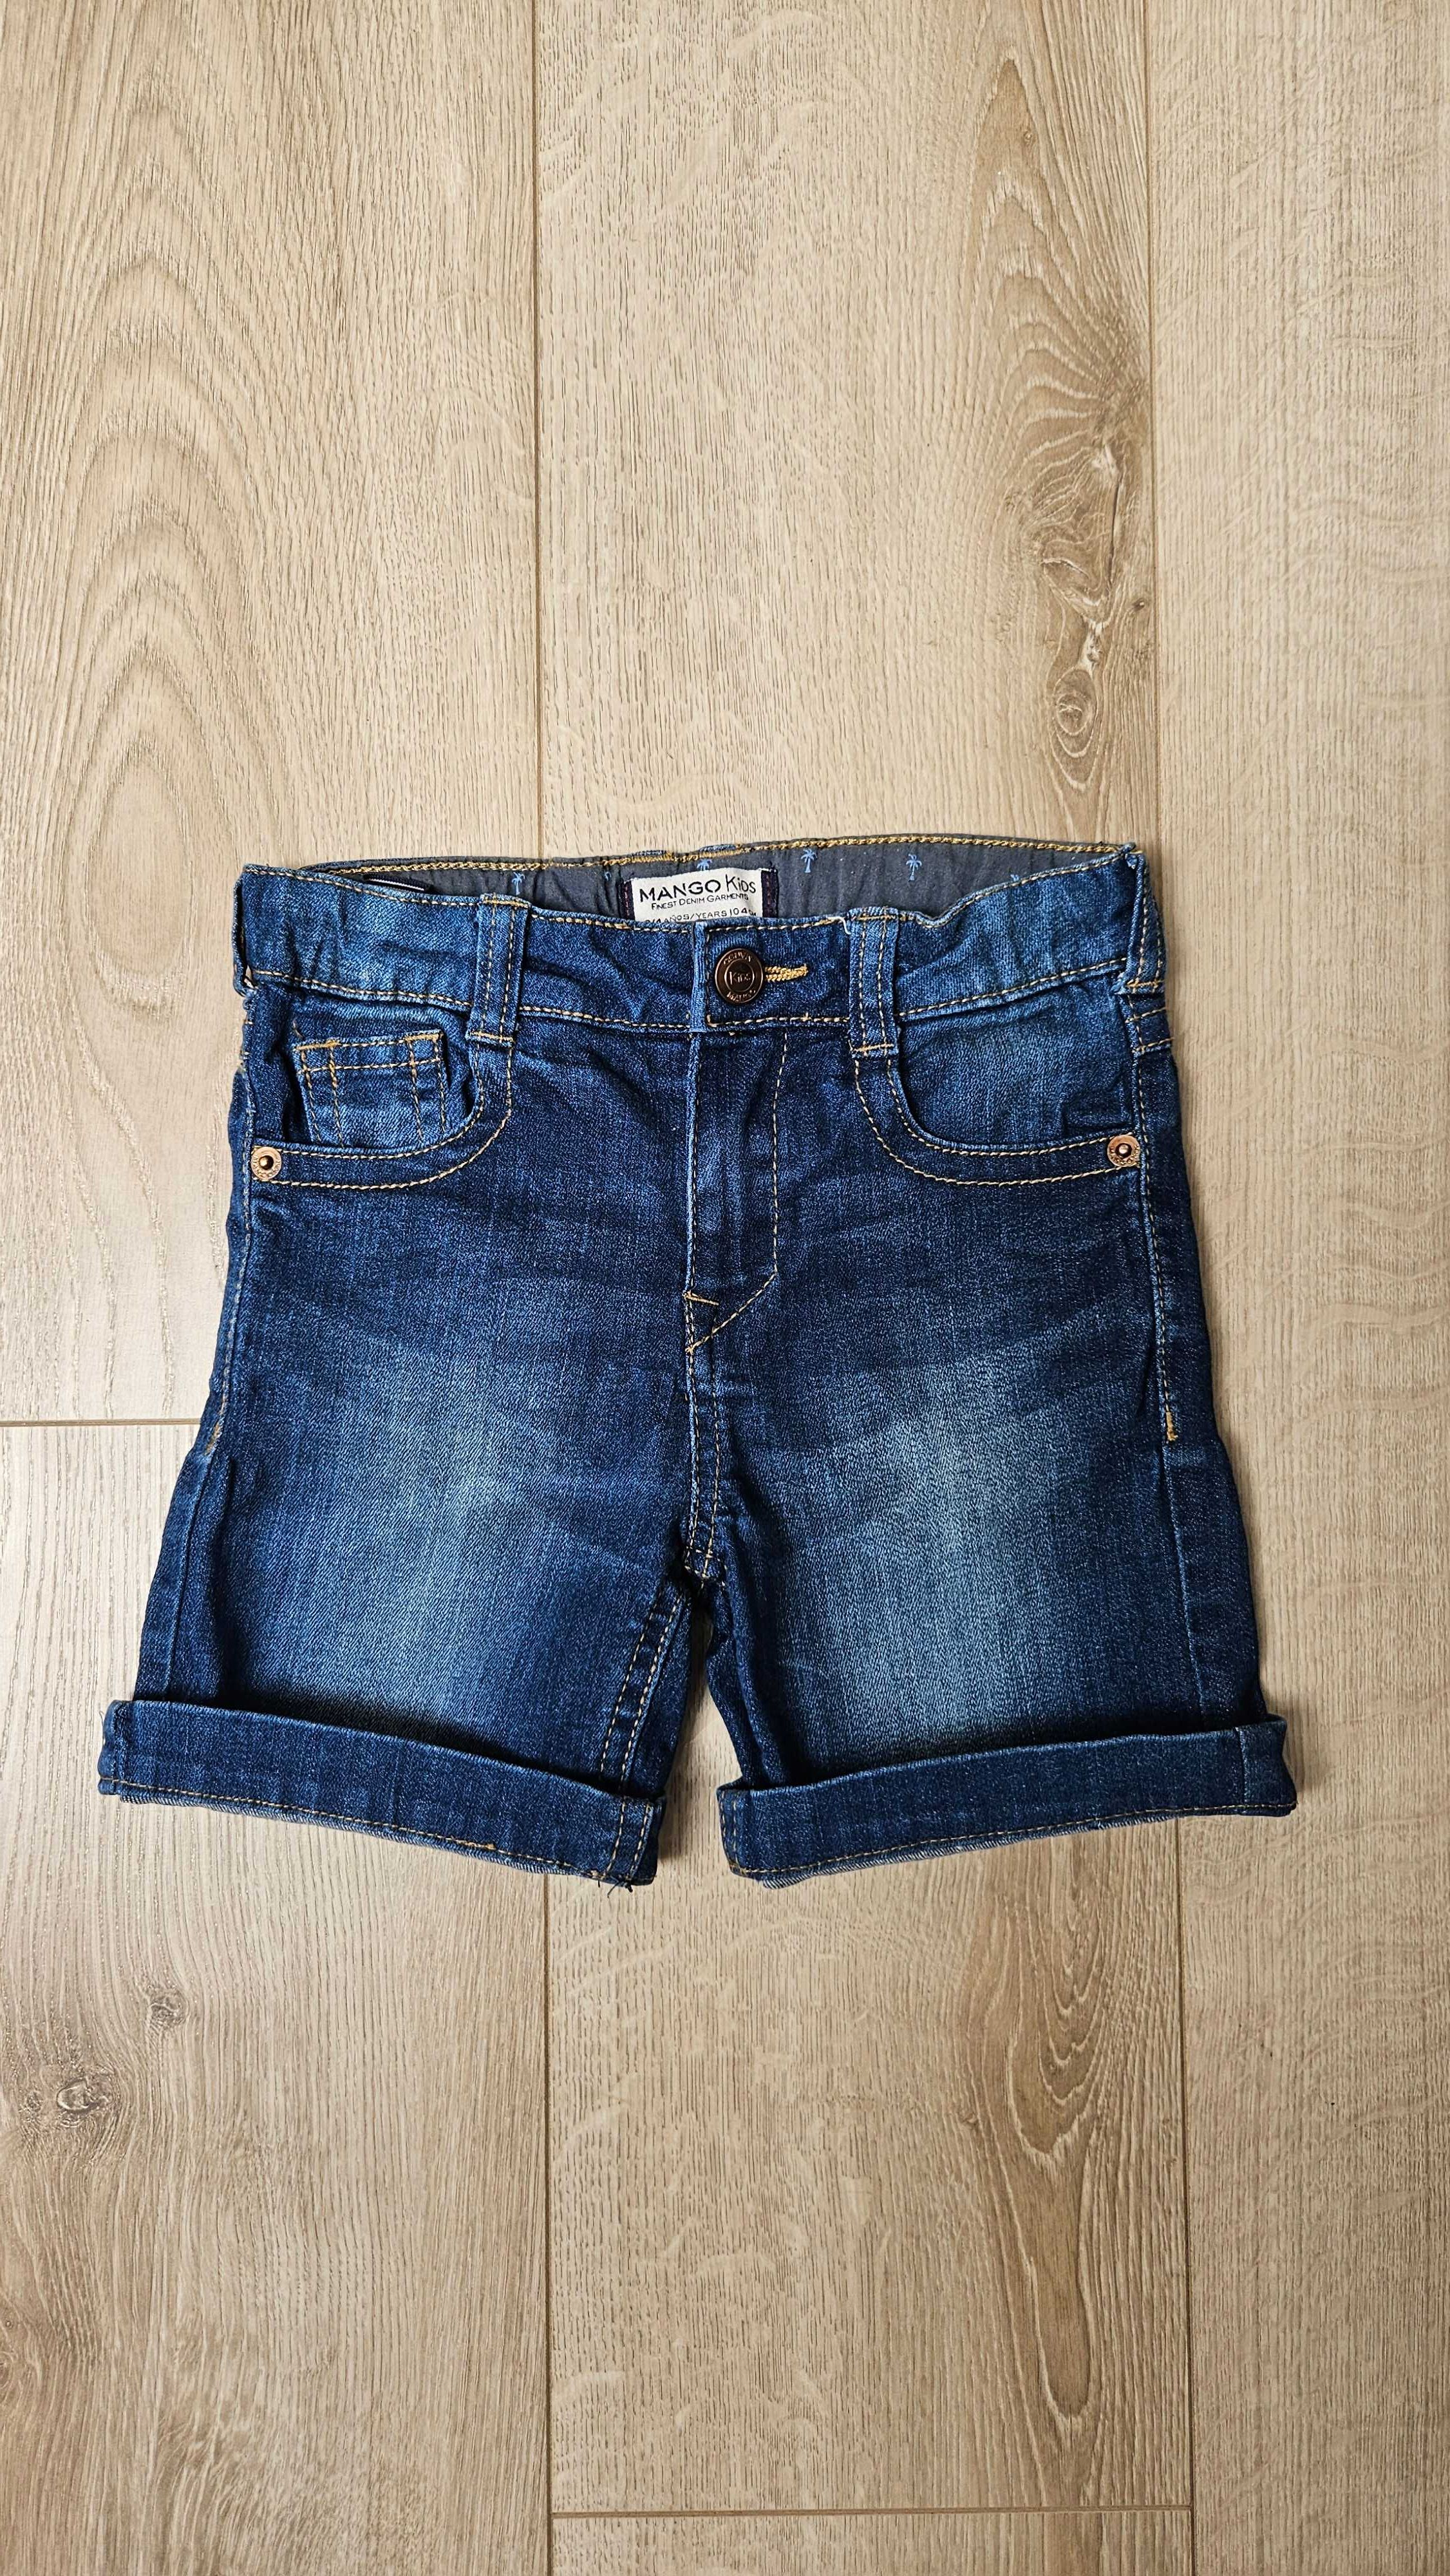 Spodenki jeans rozm. 104 cm